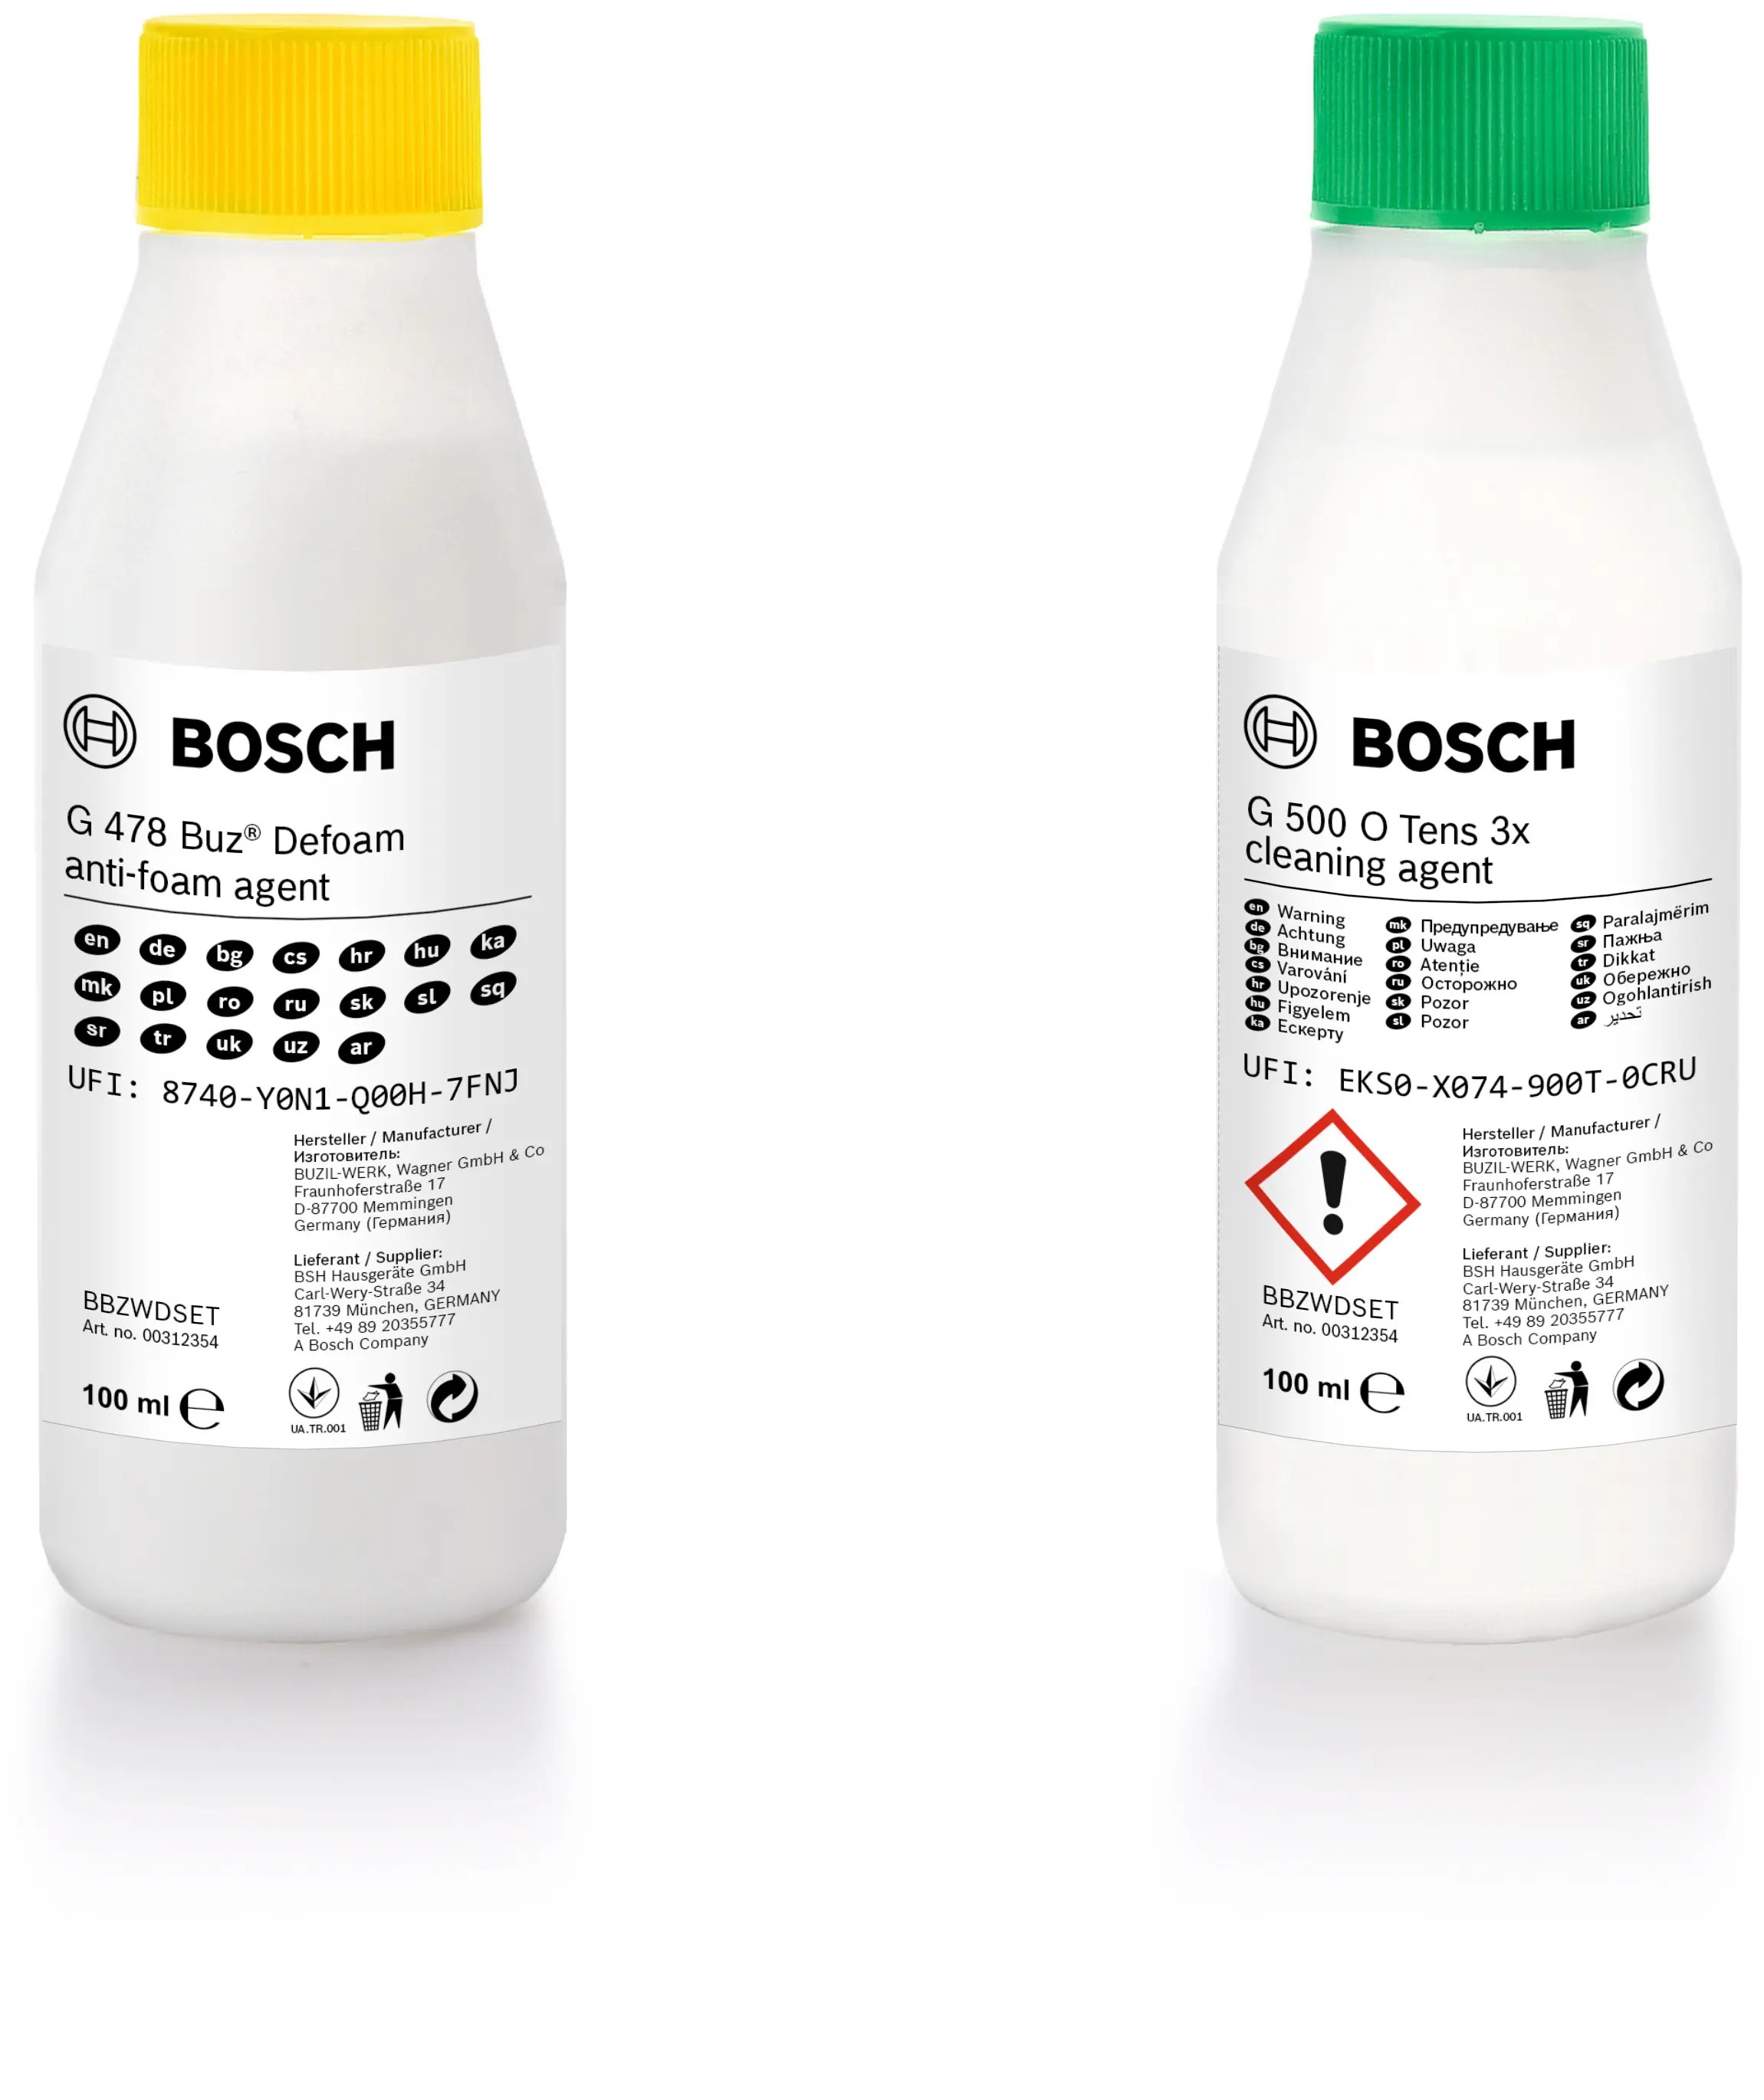 Відгуки миючий засіб Bosch BBZWDSET в Україні